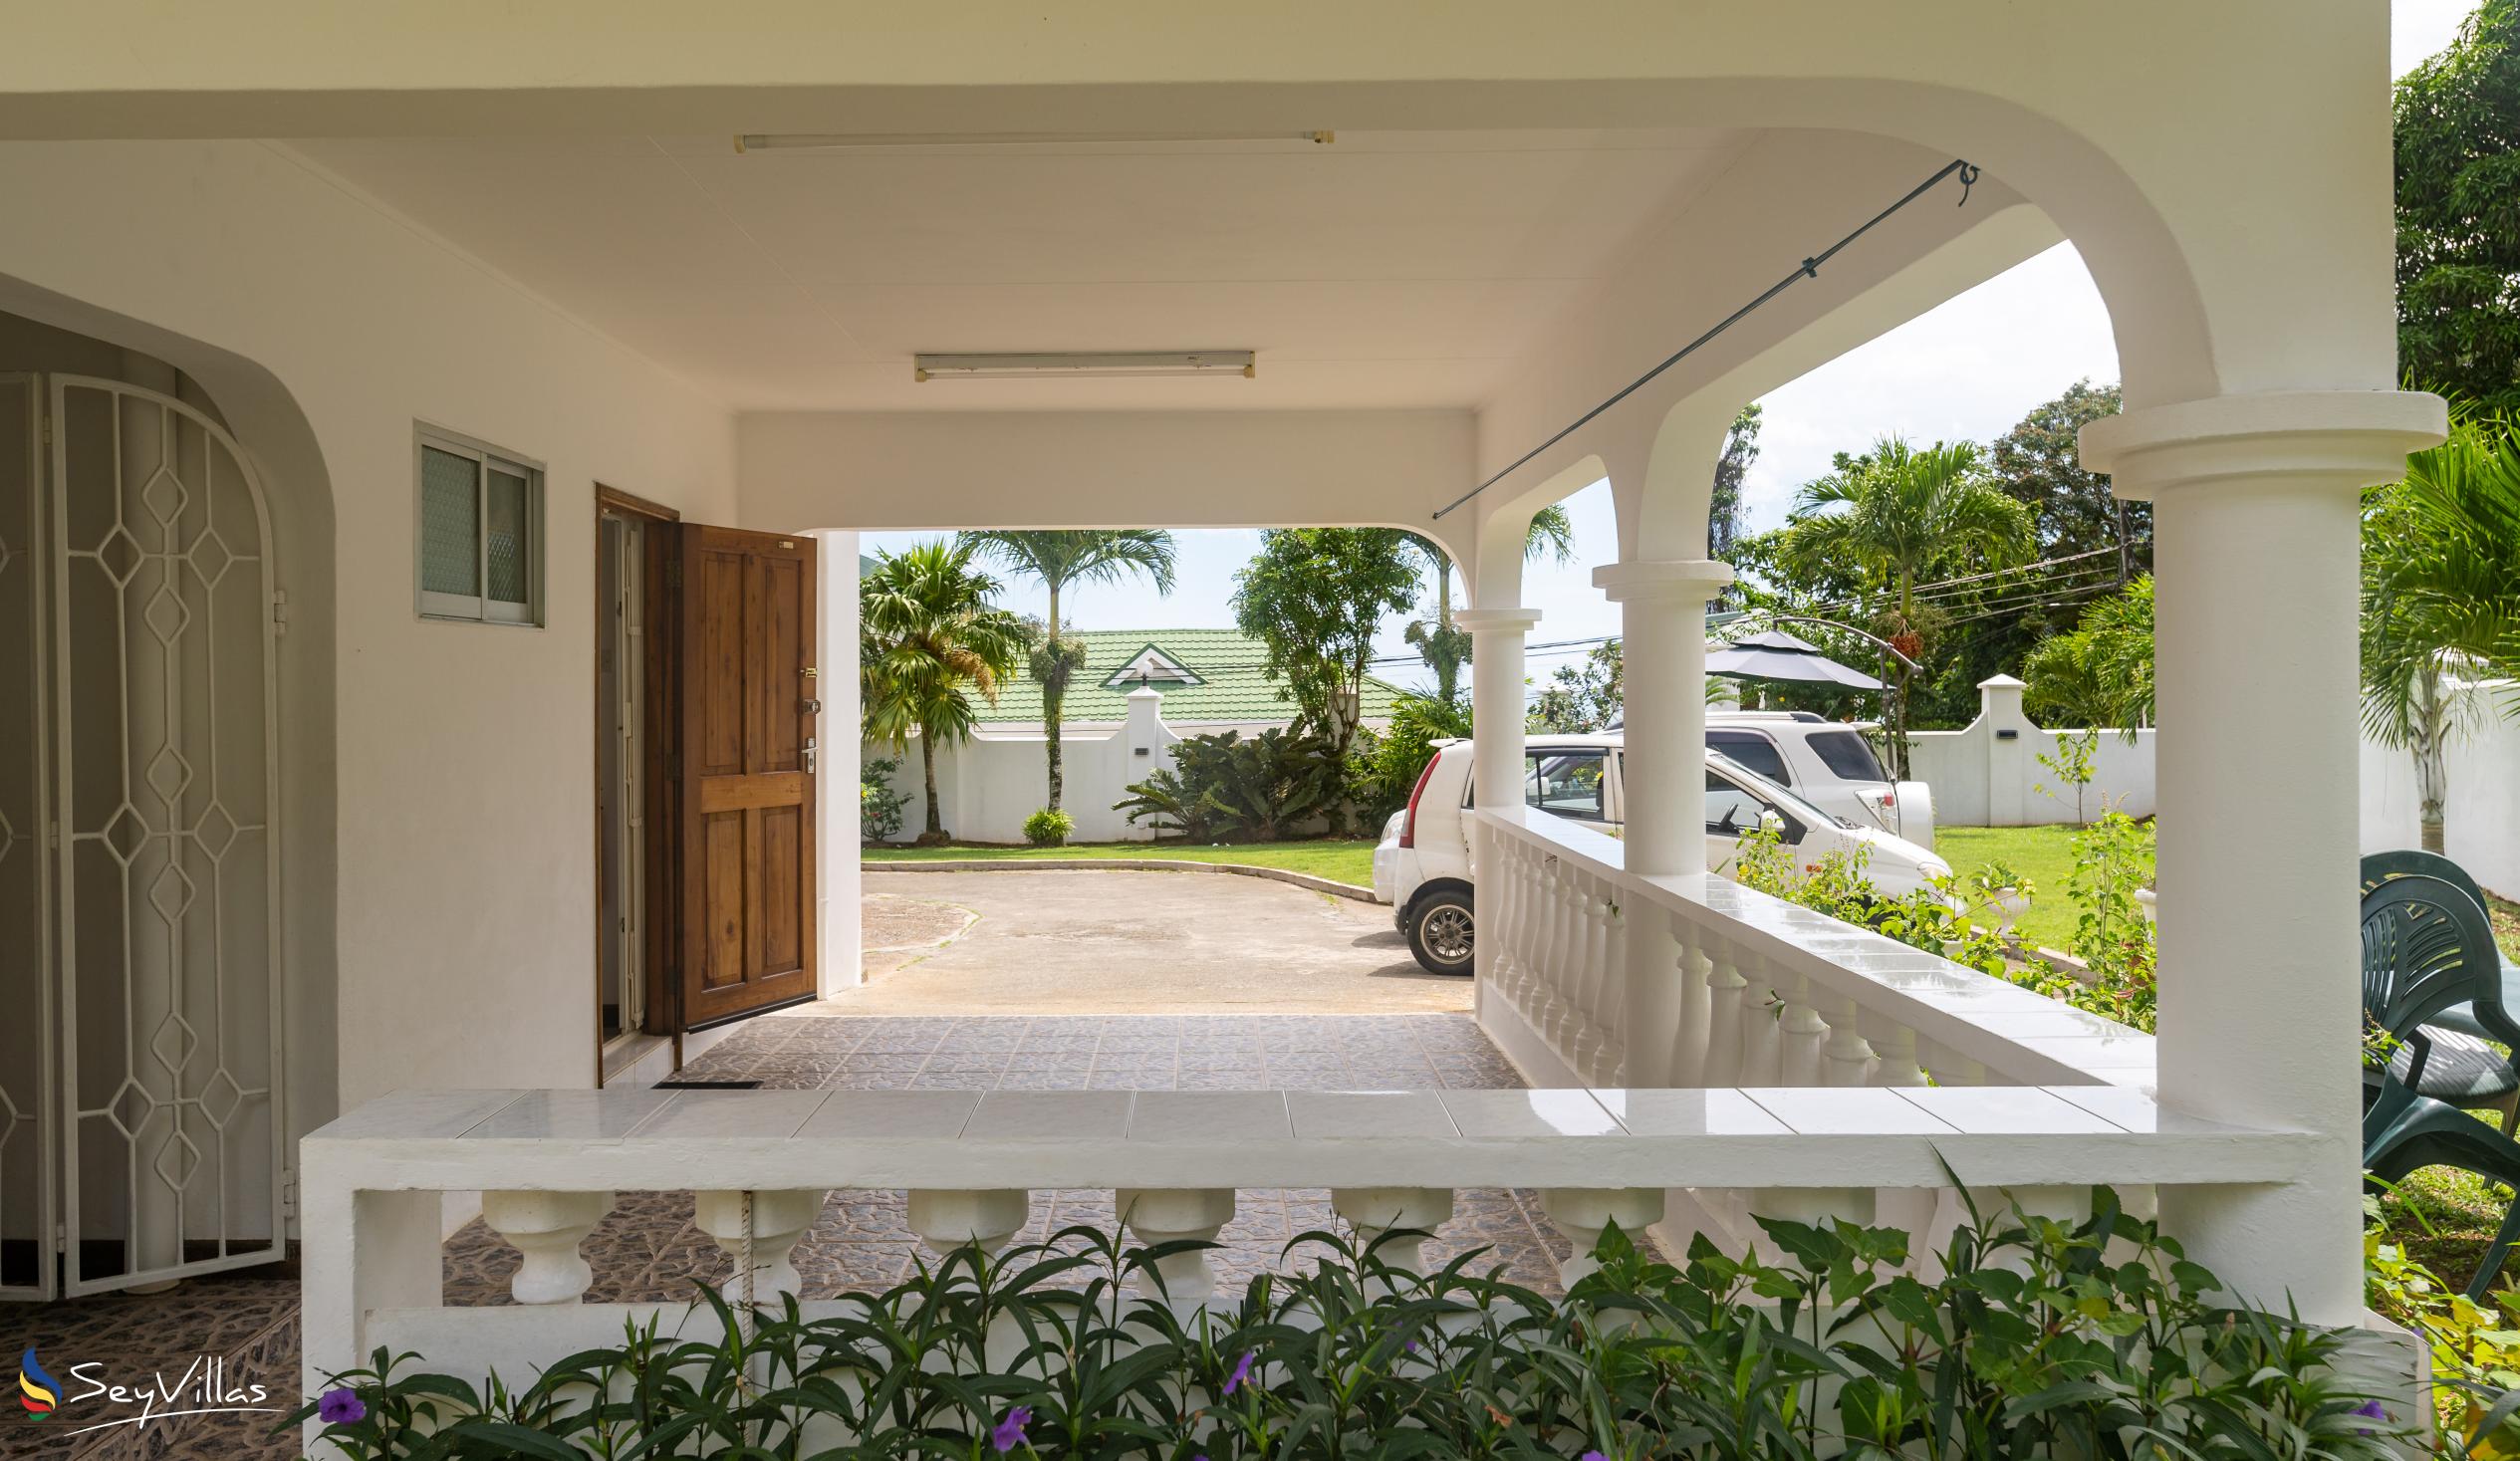 Foto 11: Villa Verde - Extérieur - Mahé (Seychelles)